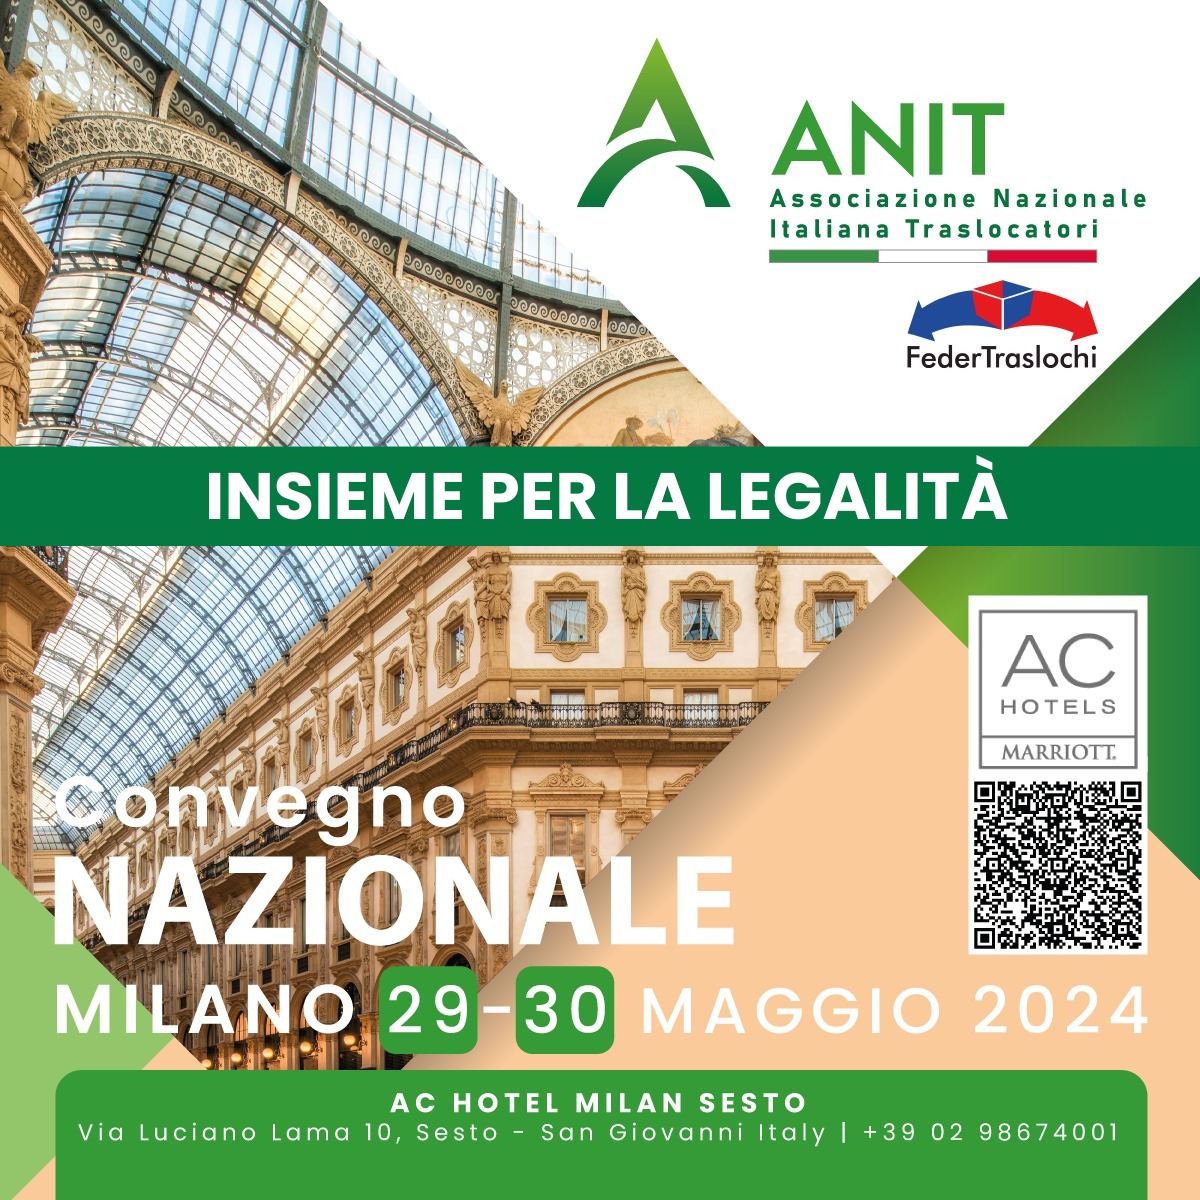 Convegno Nazionale Milano ANIT